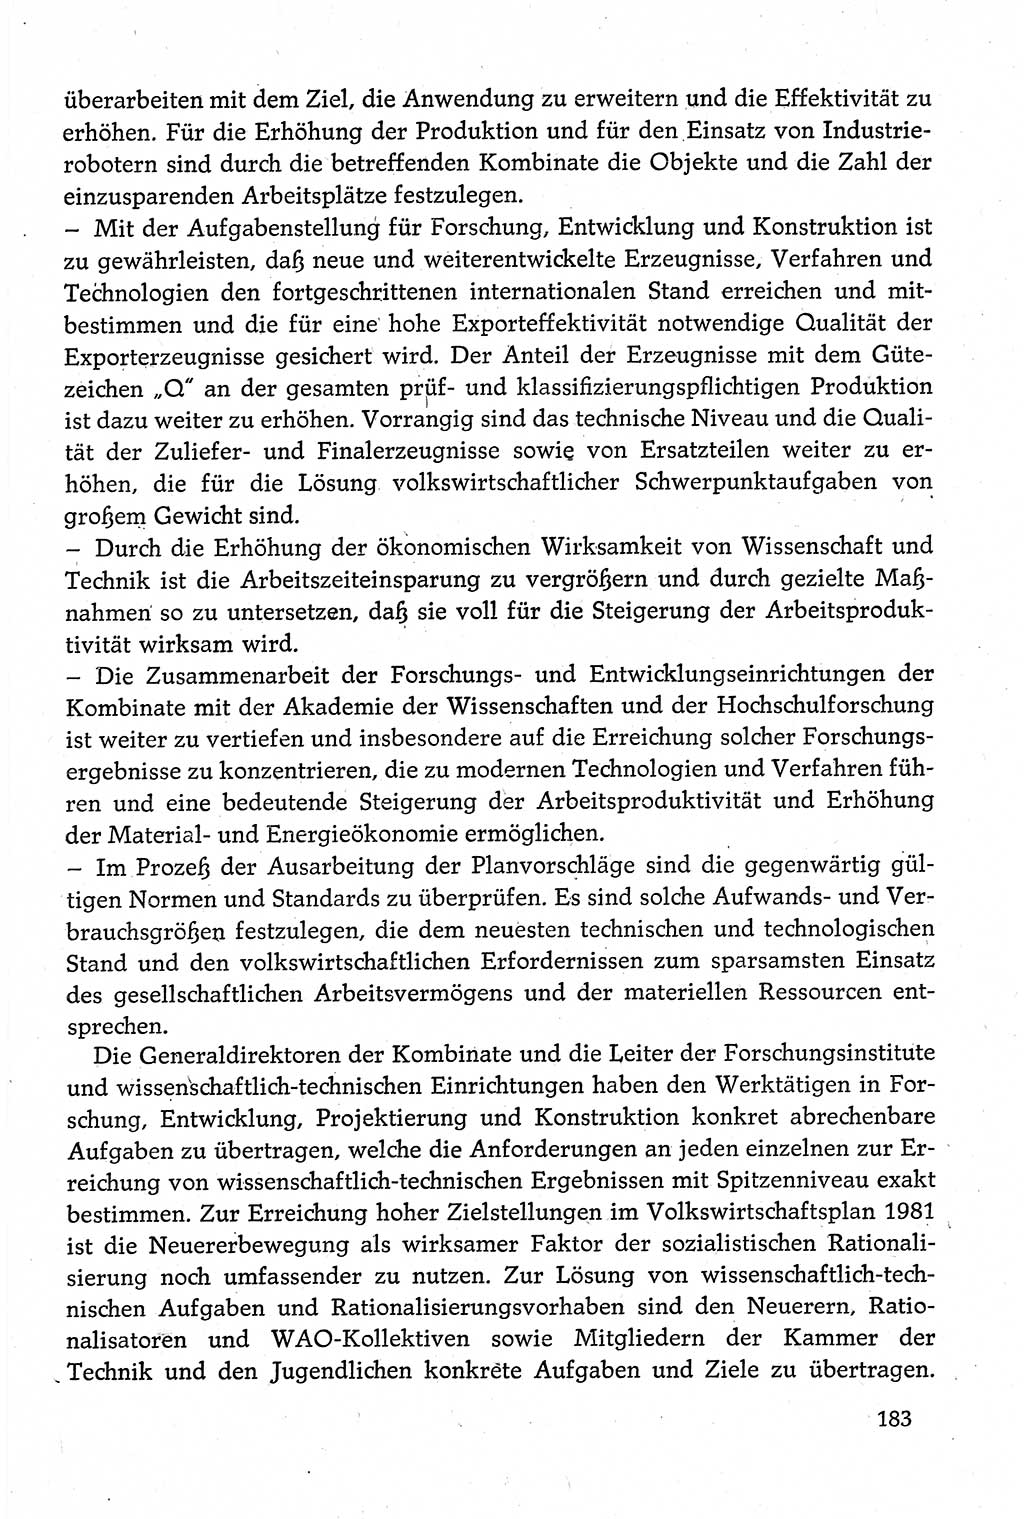 Dokumente der Sozialistischen Einheitspartei Deutschlands (SED) [Deutsche Demokratische Republik (DDR)] 1980-1981, Seite 183 (Dok. SED DDR 1980-1981, S. 183)